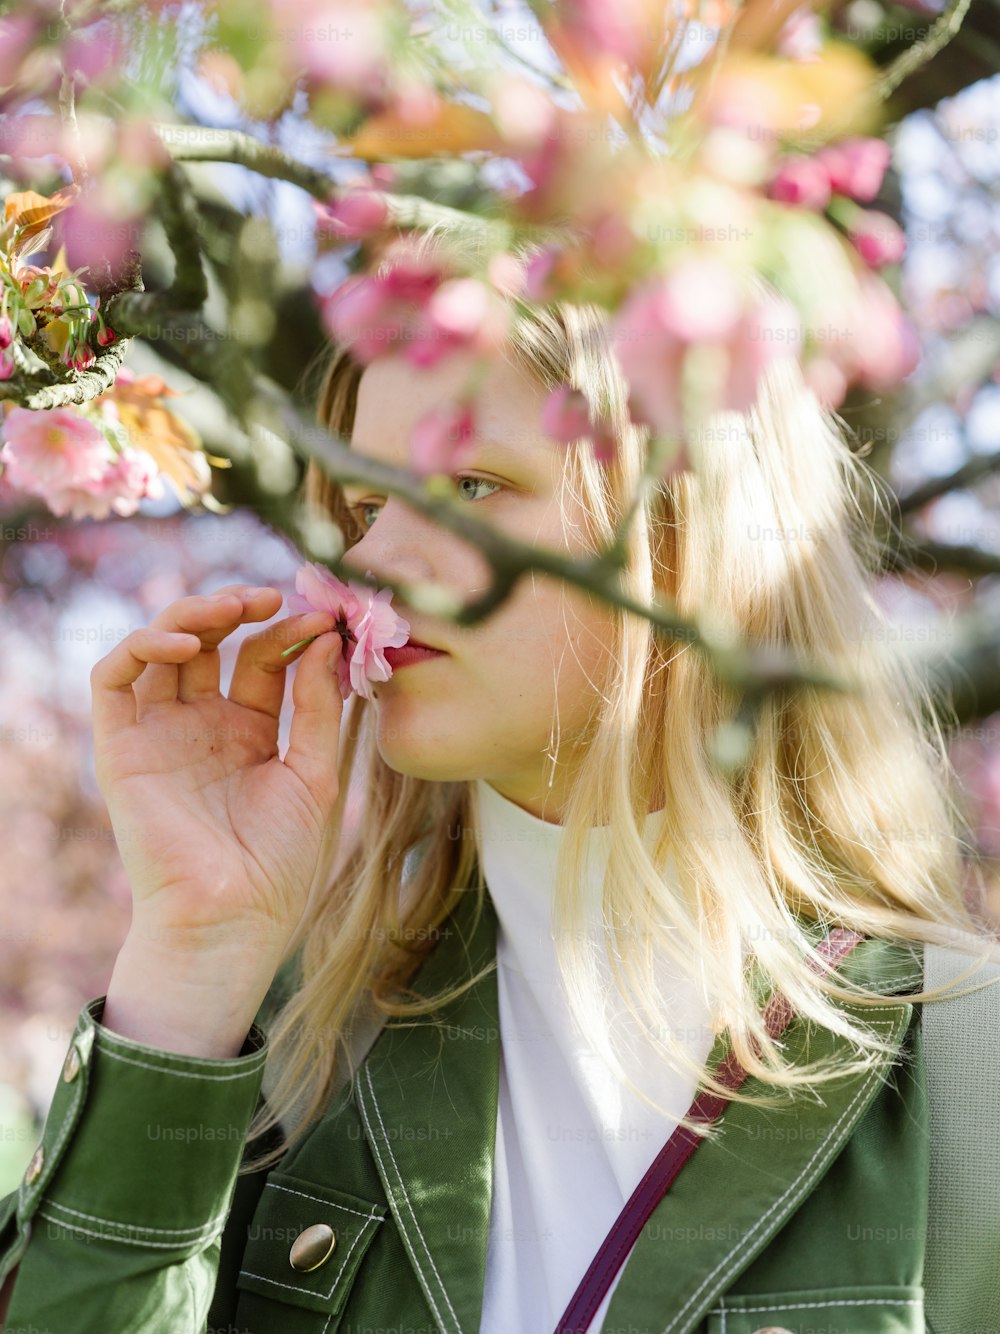 Eine Frau in einer grünen Jacke, die eine Blume riecht